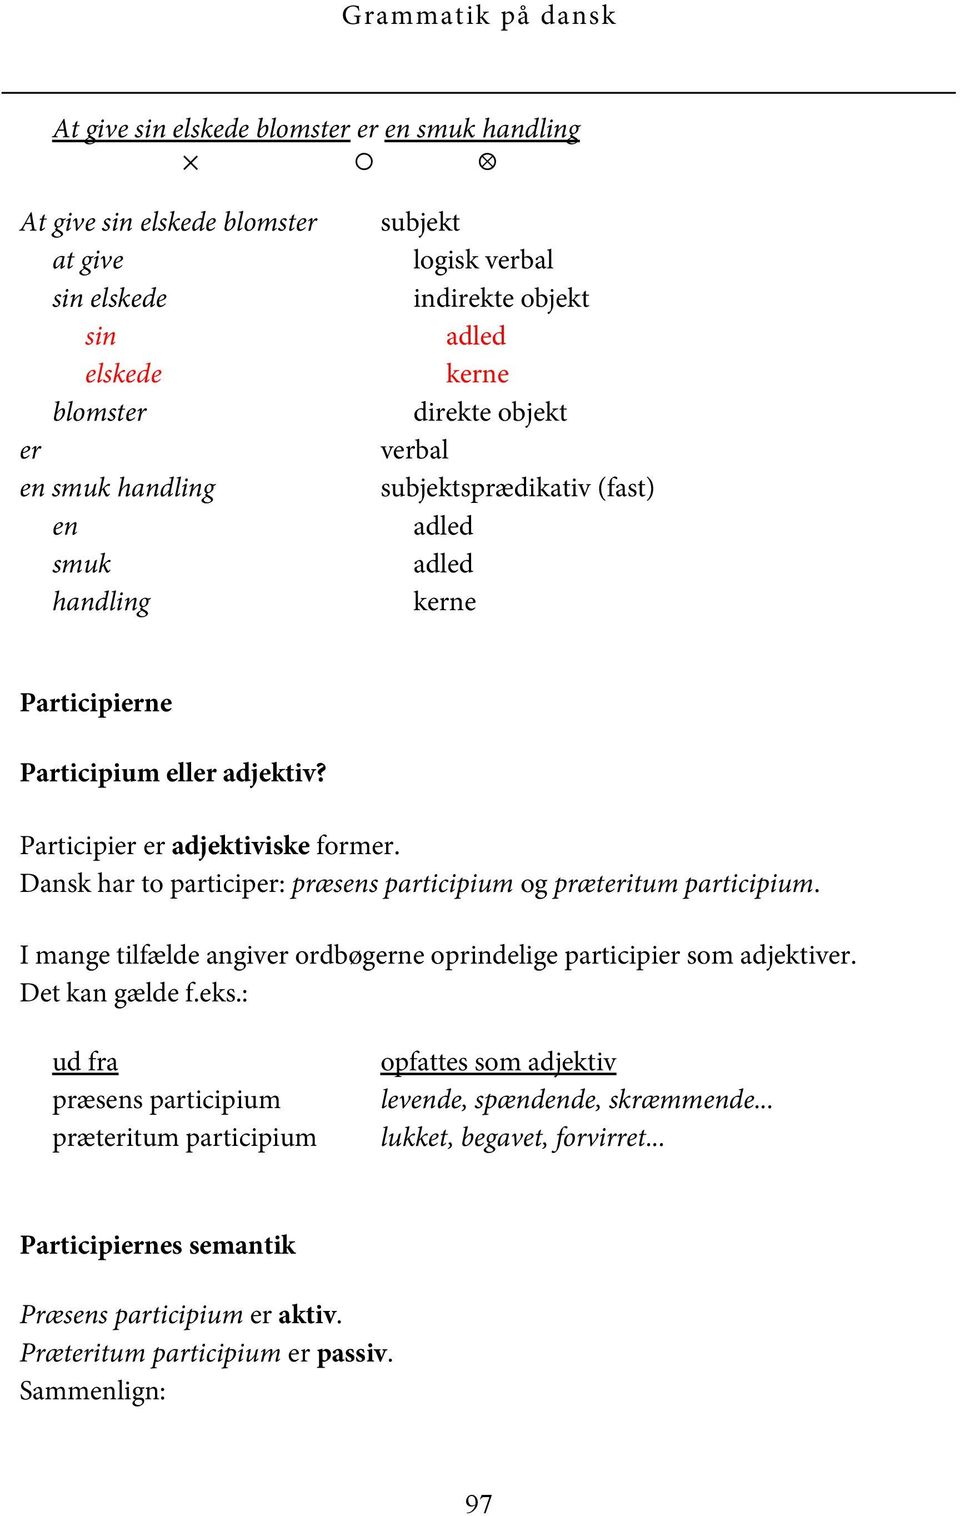 Dansk har to participer: præsens participium og præteritum participium. I mange tilfælde angiver ordbøgerne oprindelige participier som adjektiver. Det kan gælde f.eks.